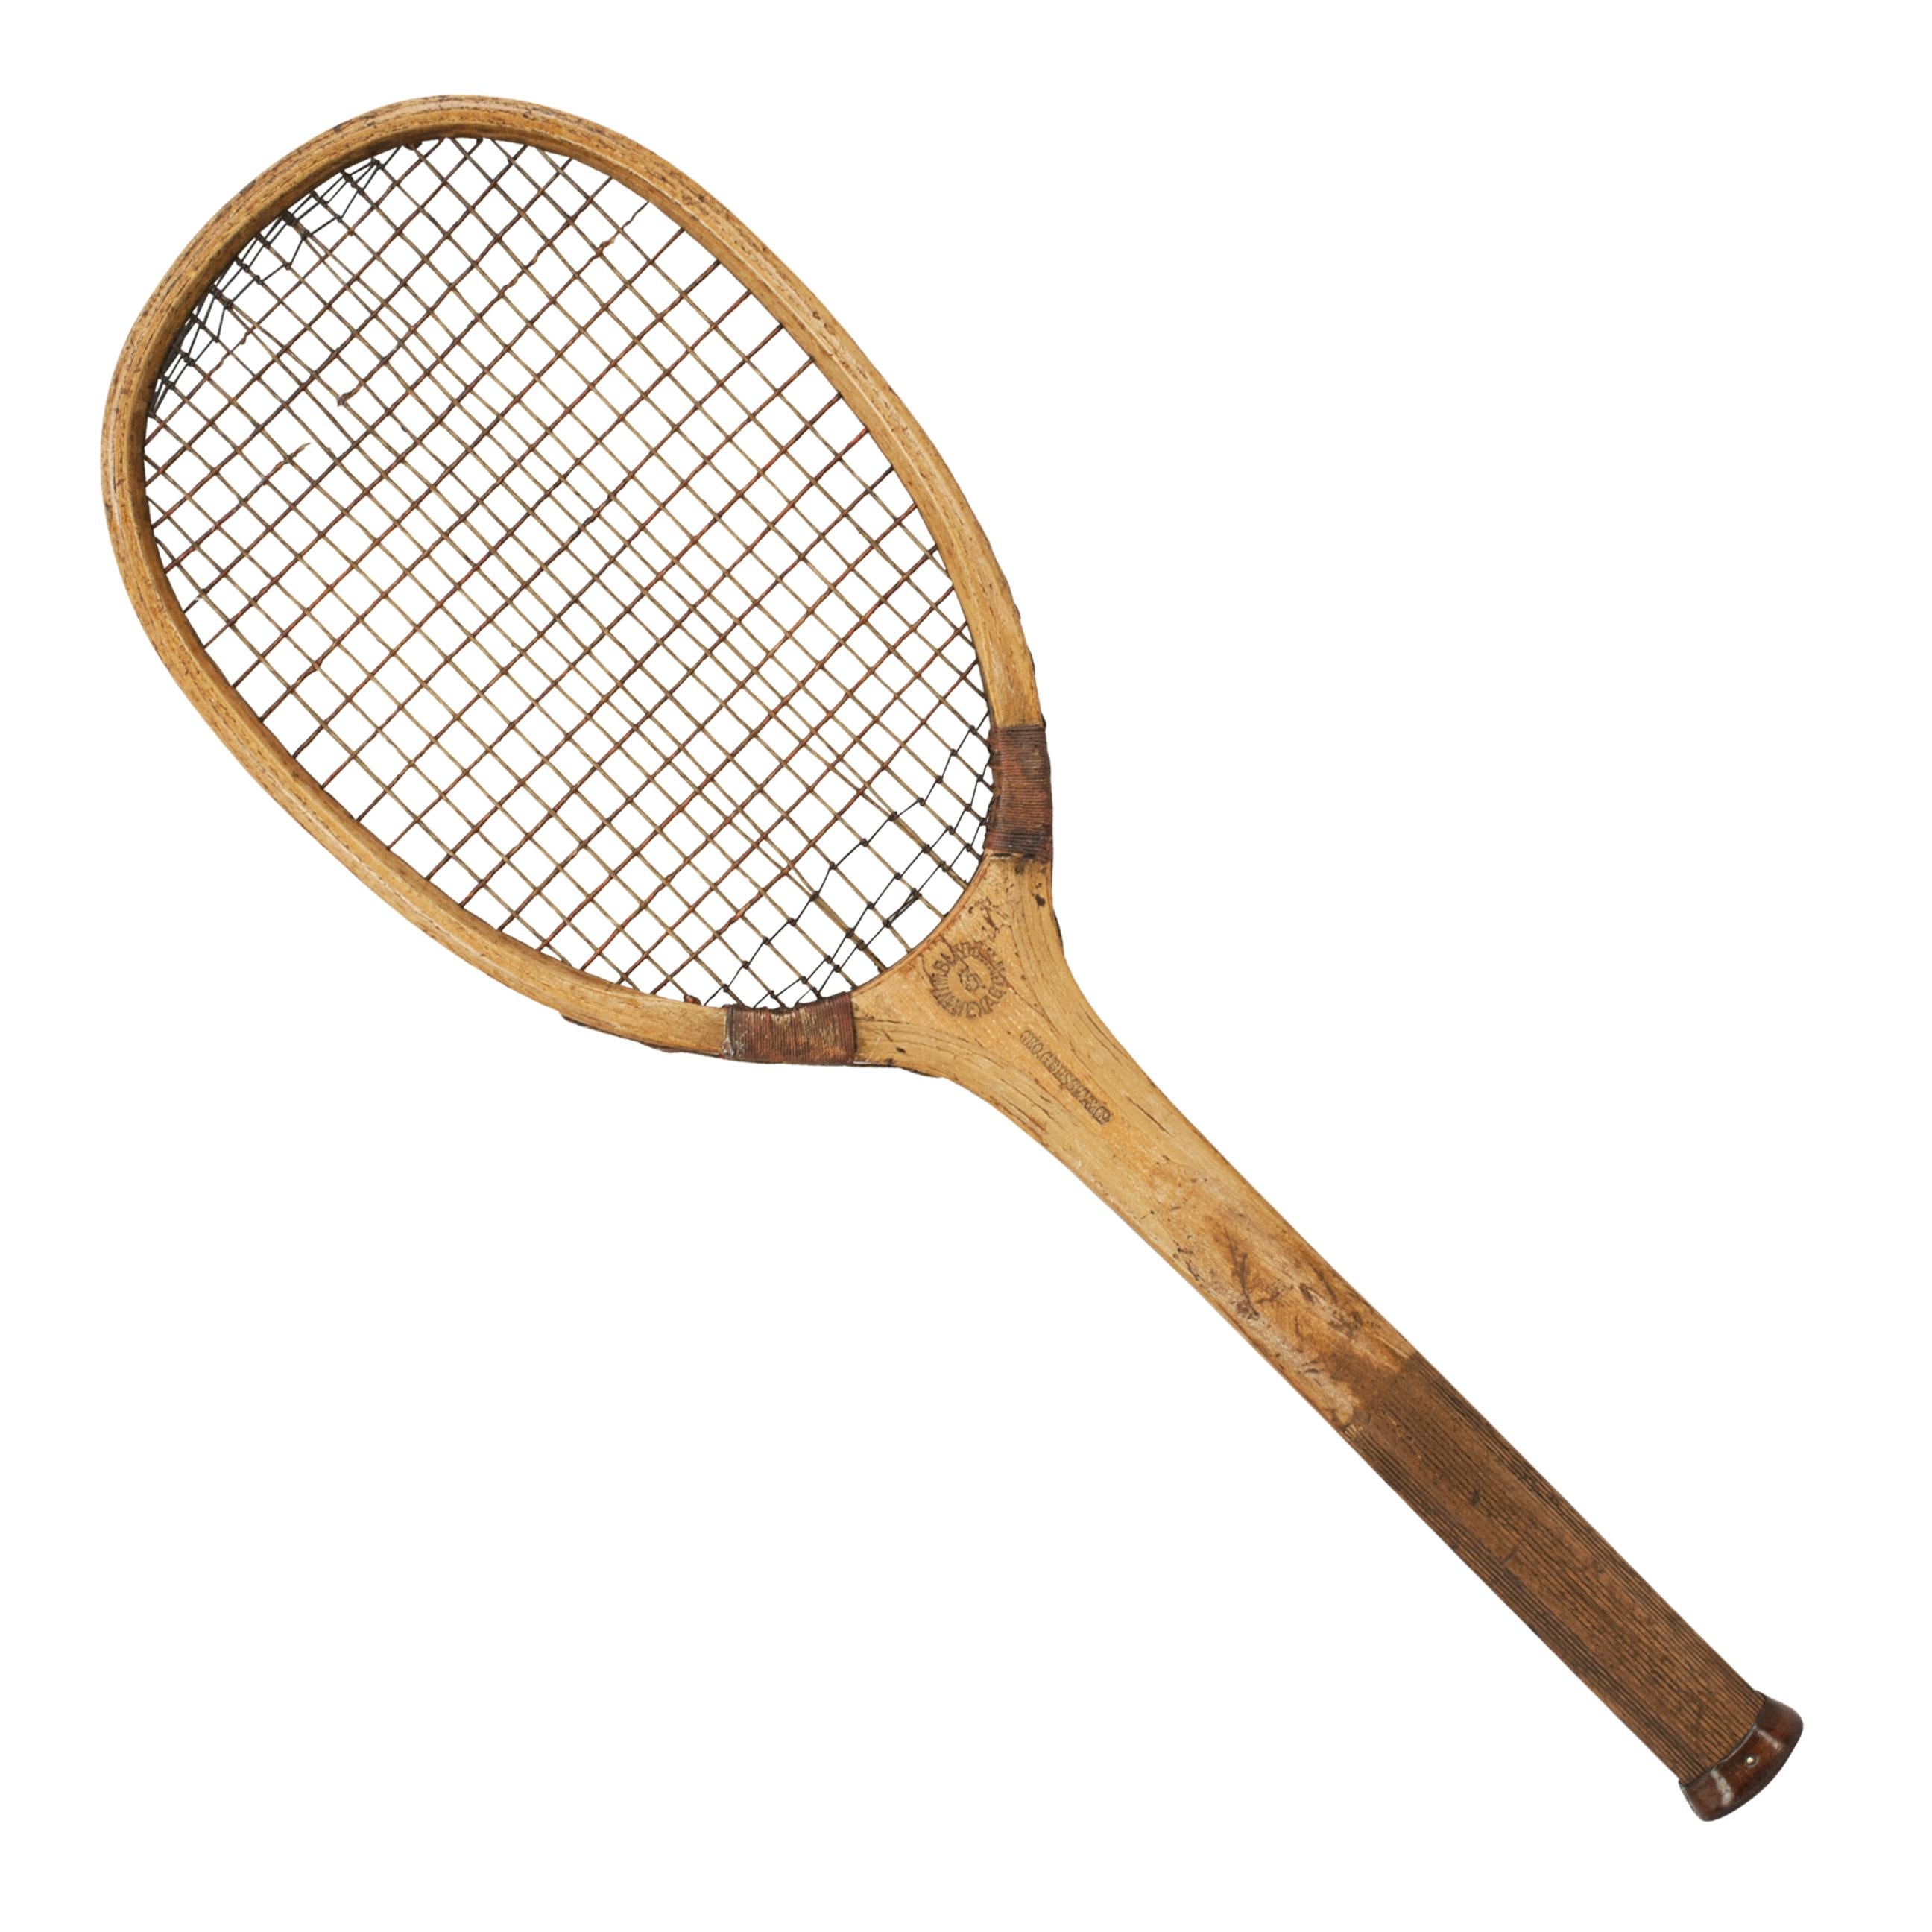 The Wimbledon Tennis Racket by Bussey